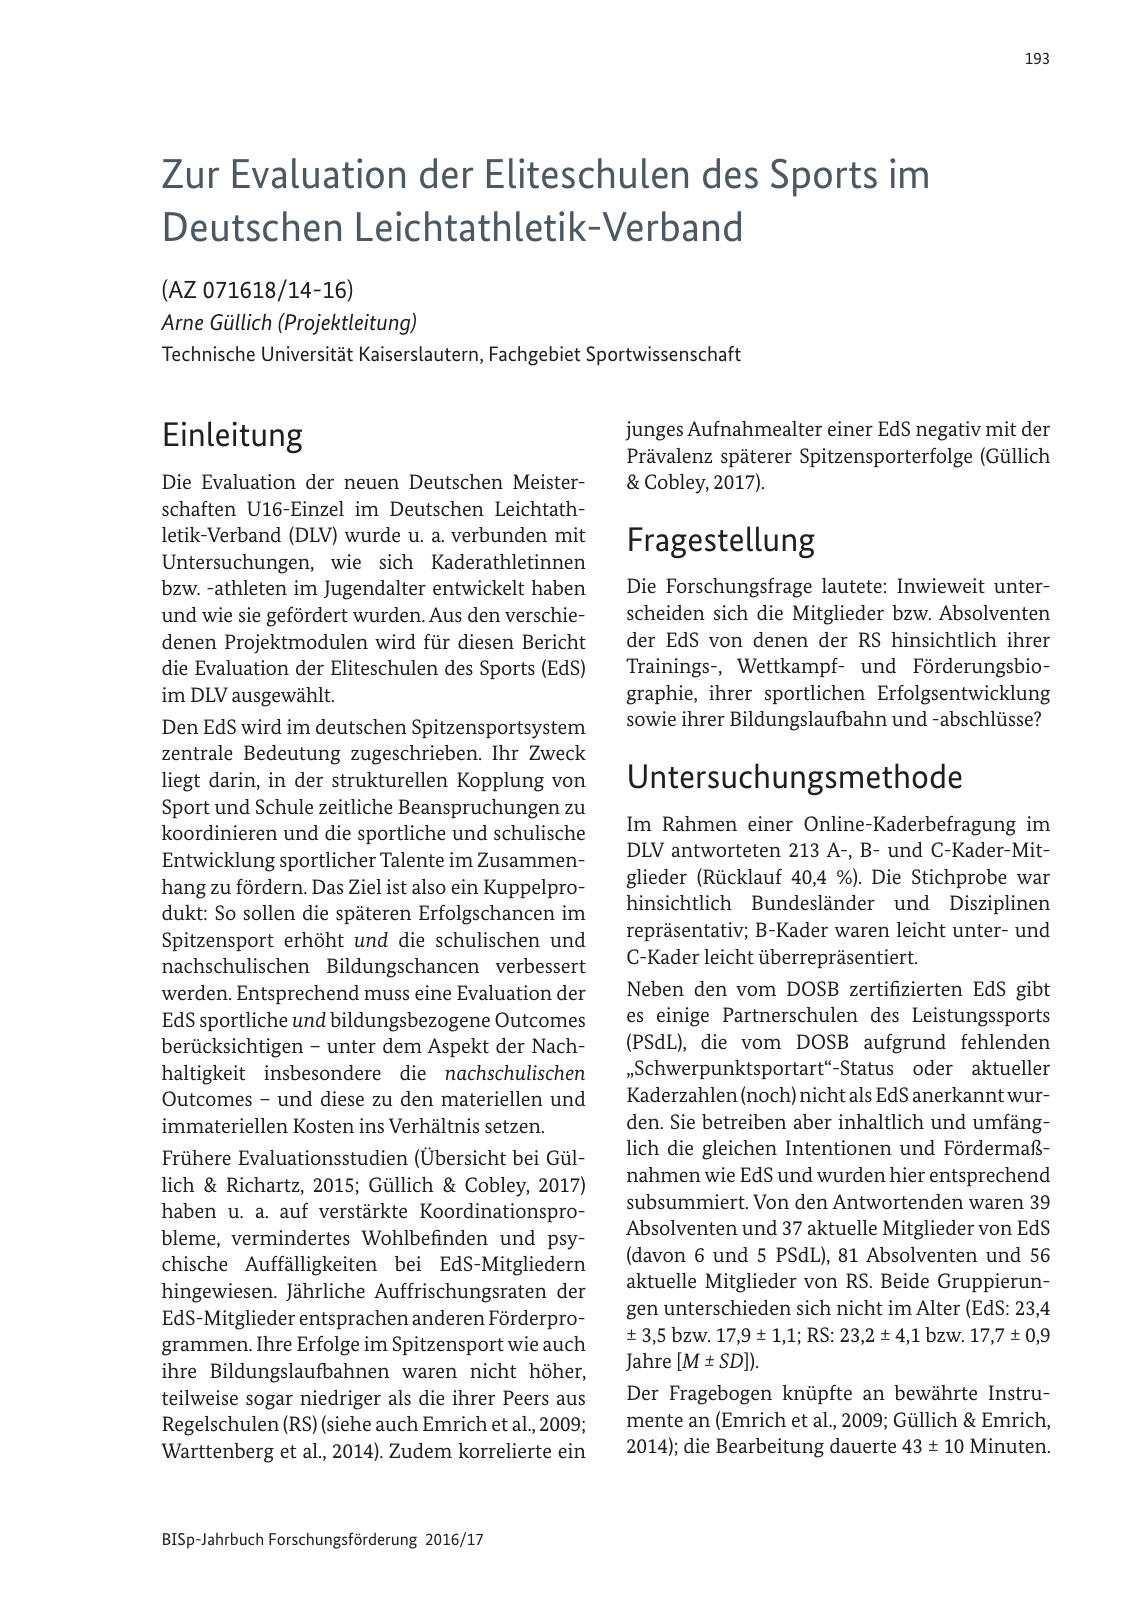 Vorschau BISp-Jahrbuch 2016/2017 Seite 195